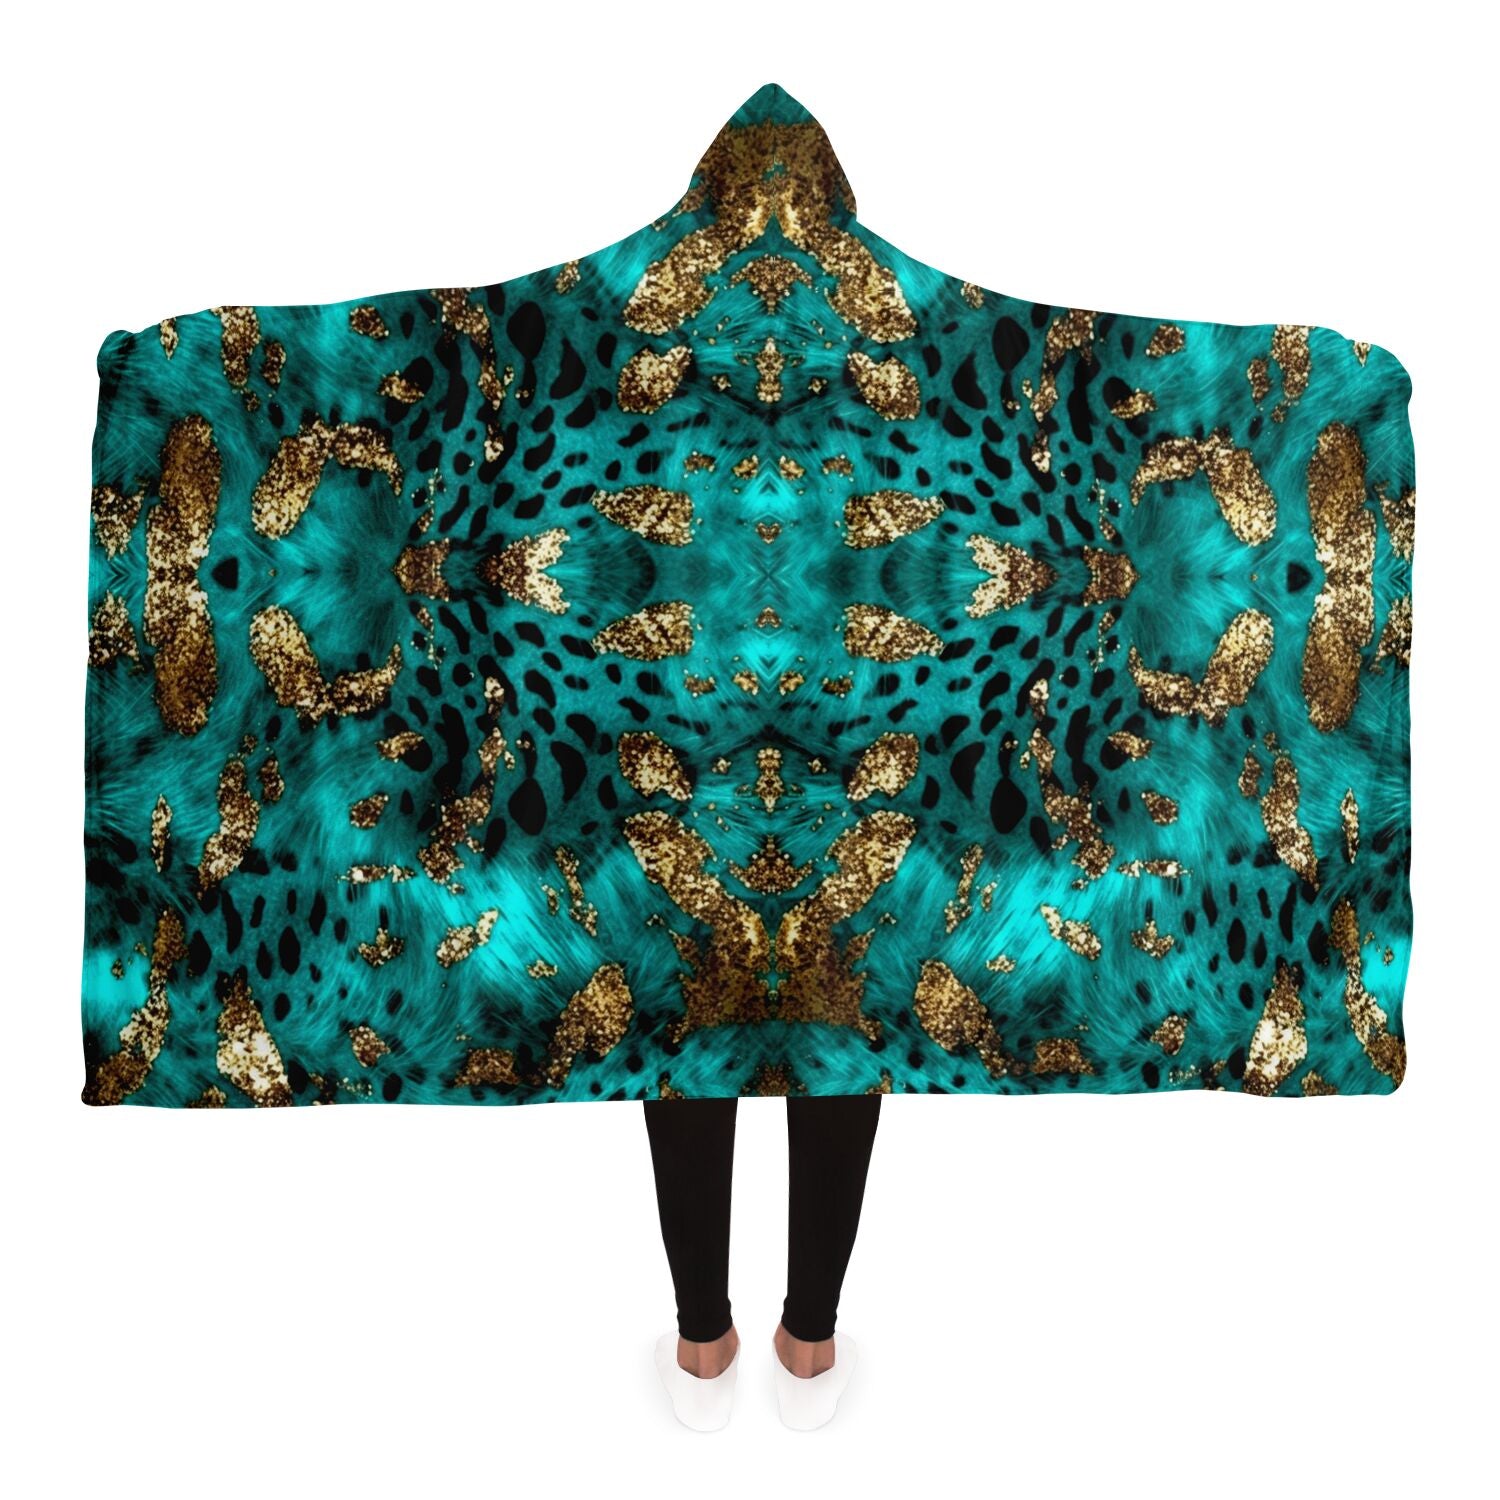 luxury fashionable hooded blanket